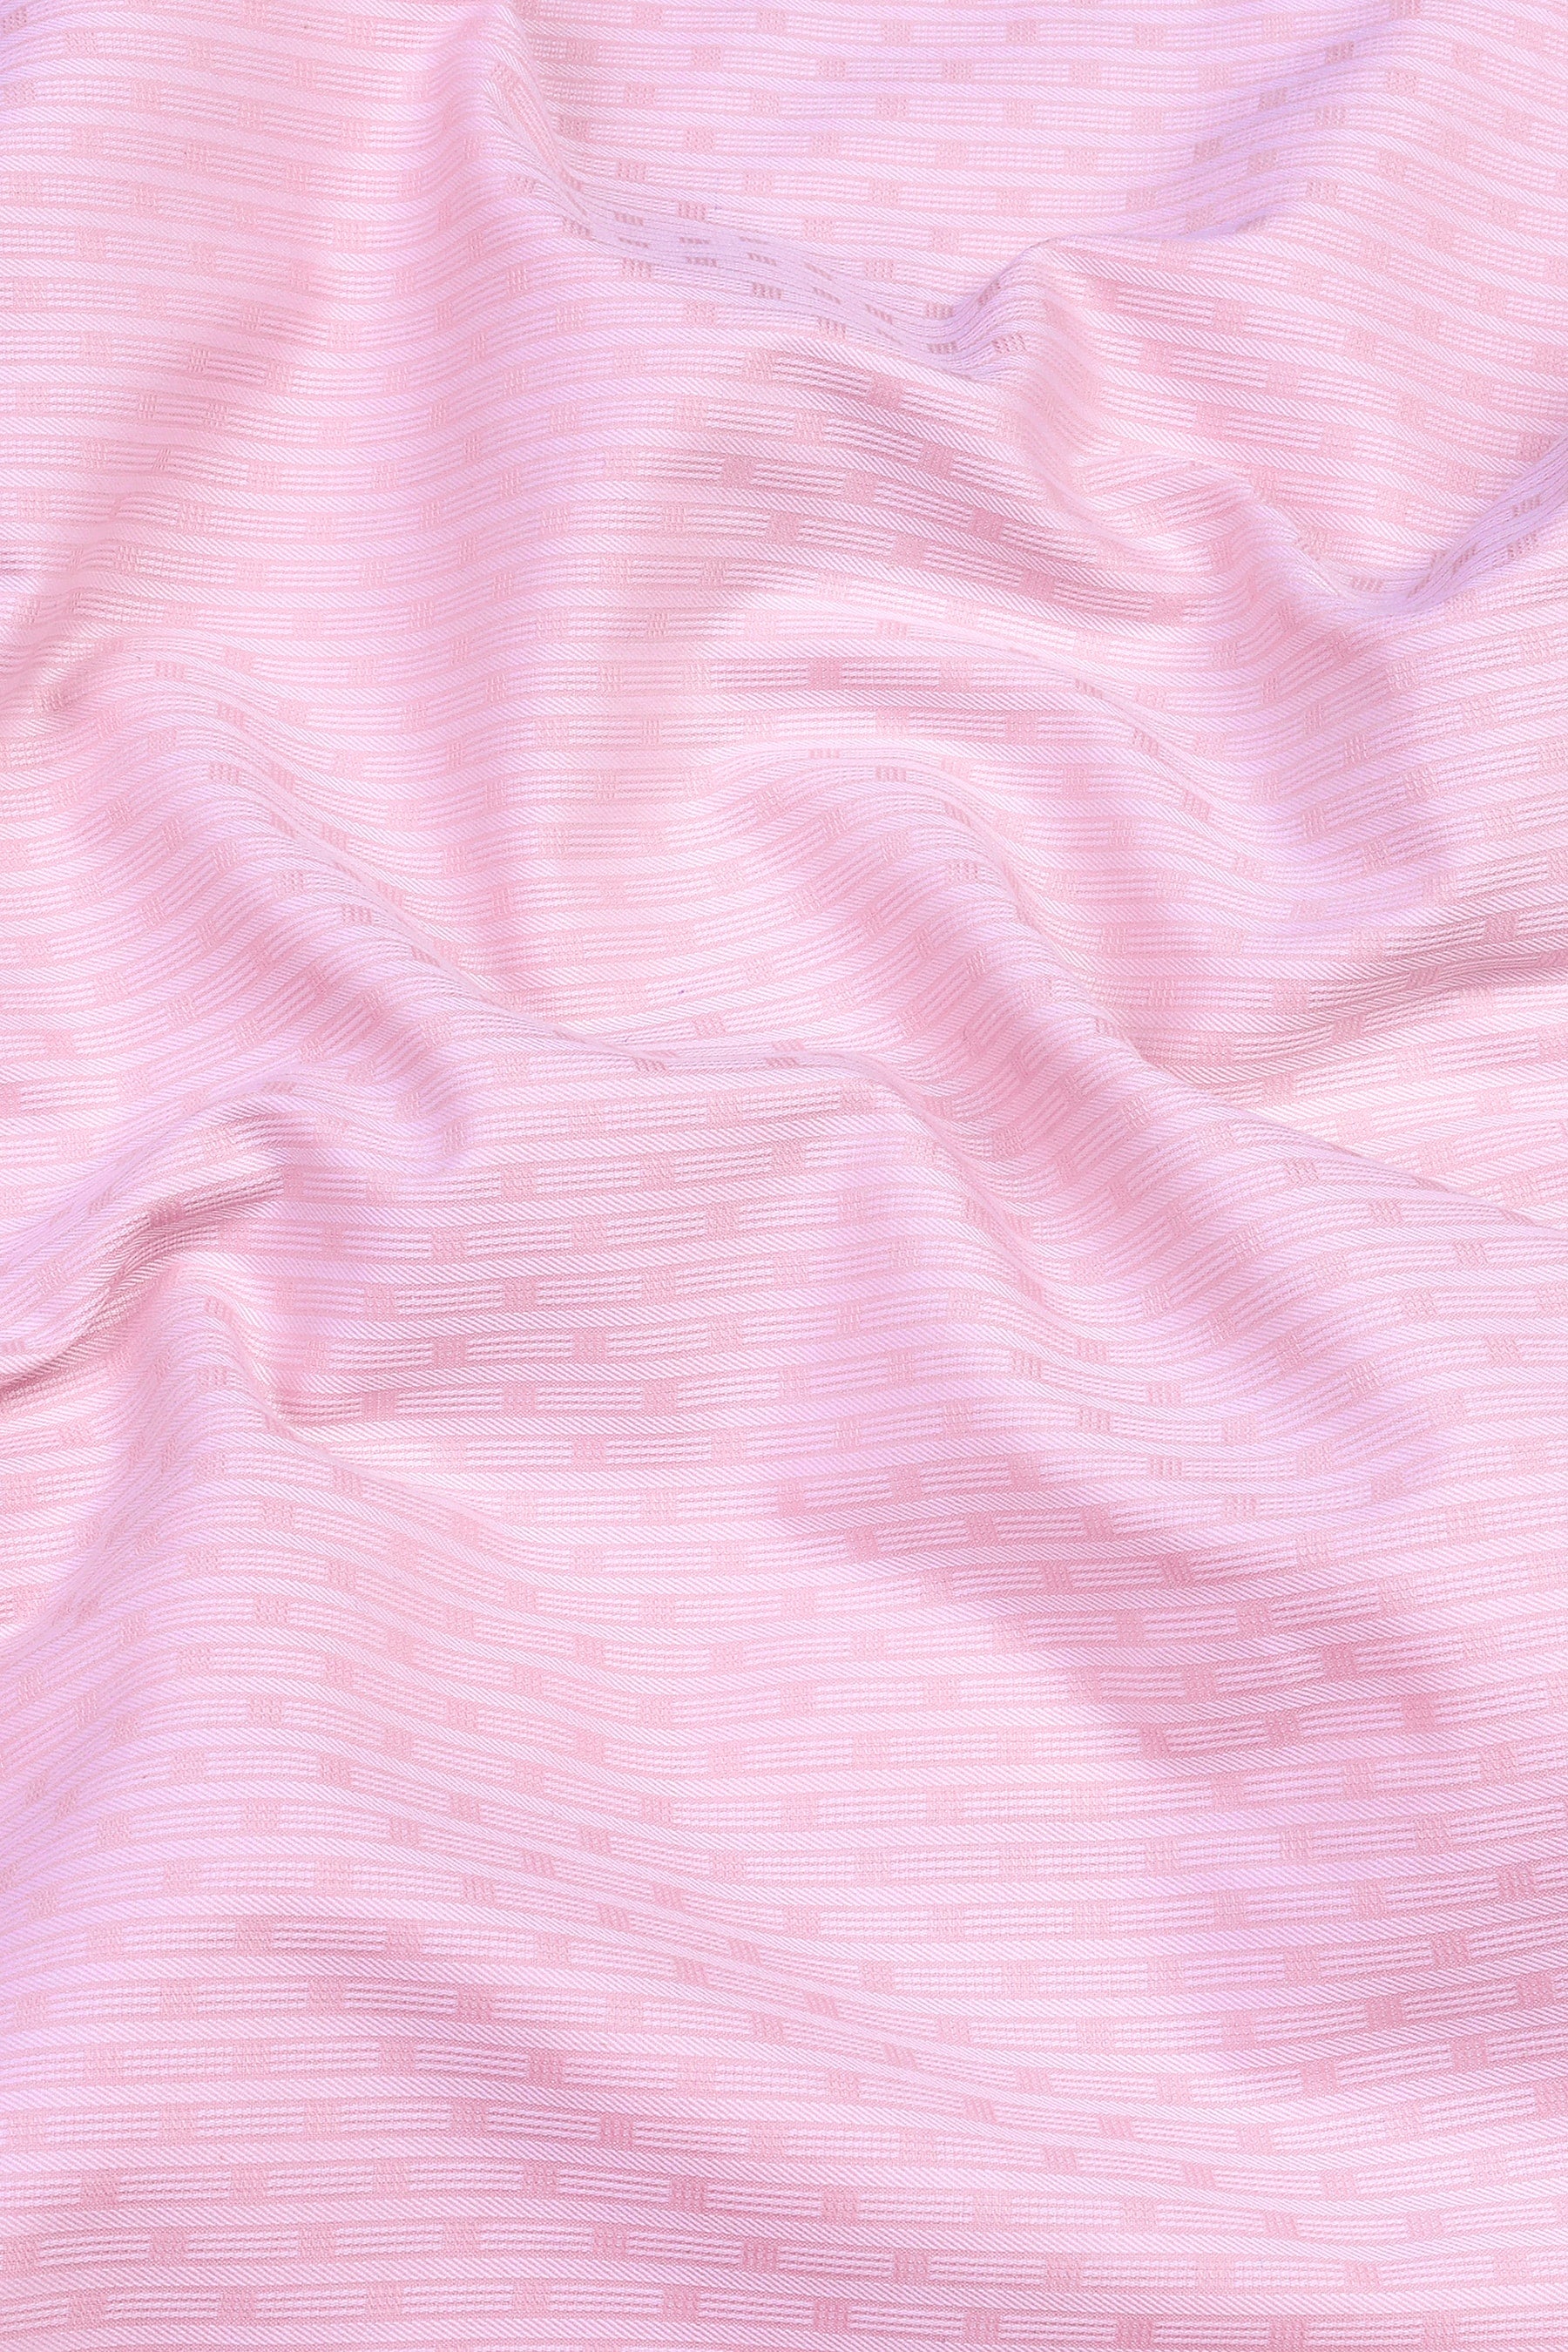 Baby pink stripe pattern jacquard shirt